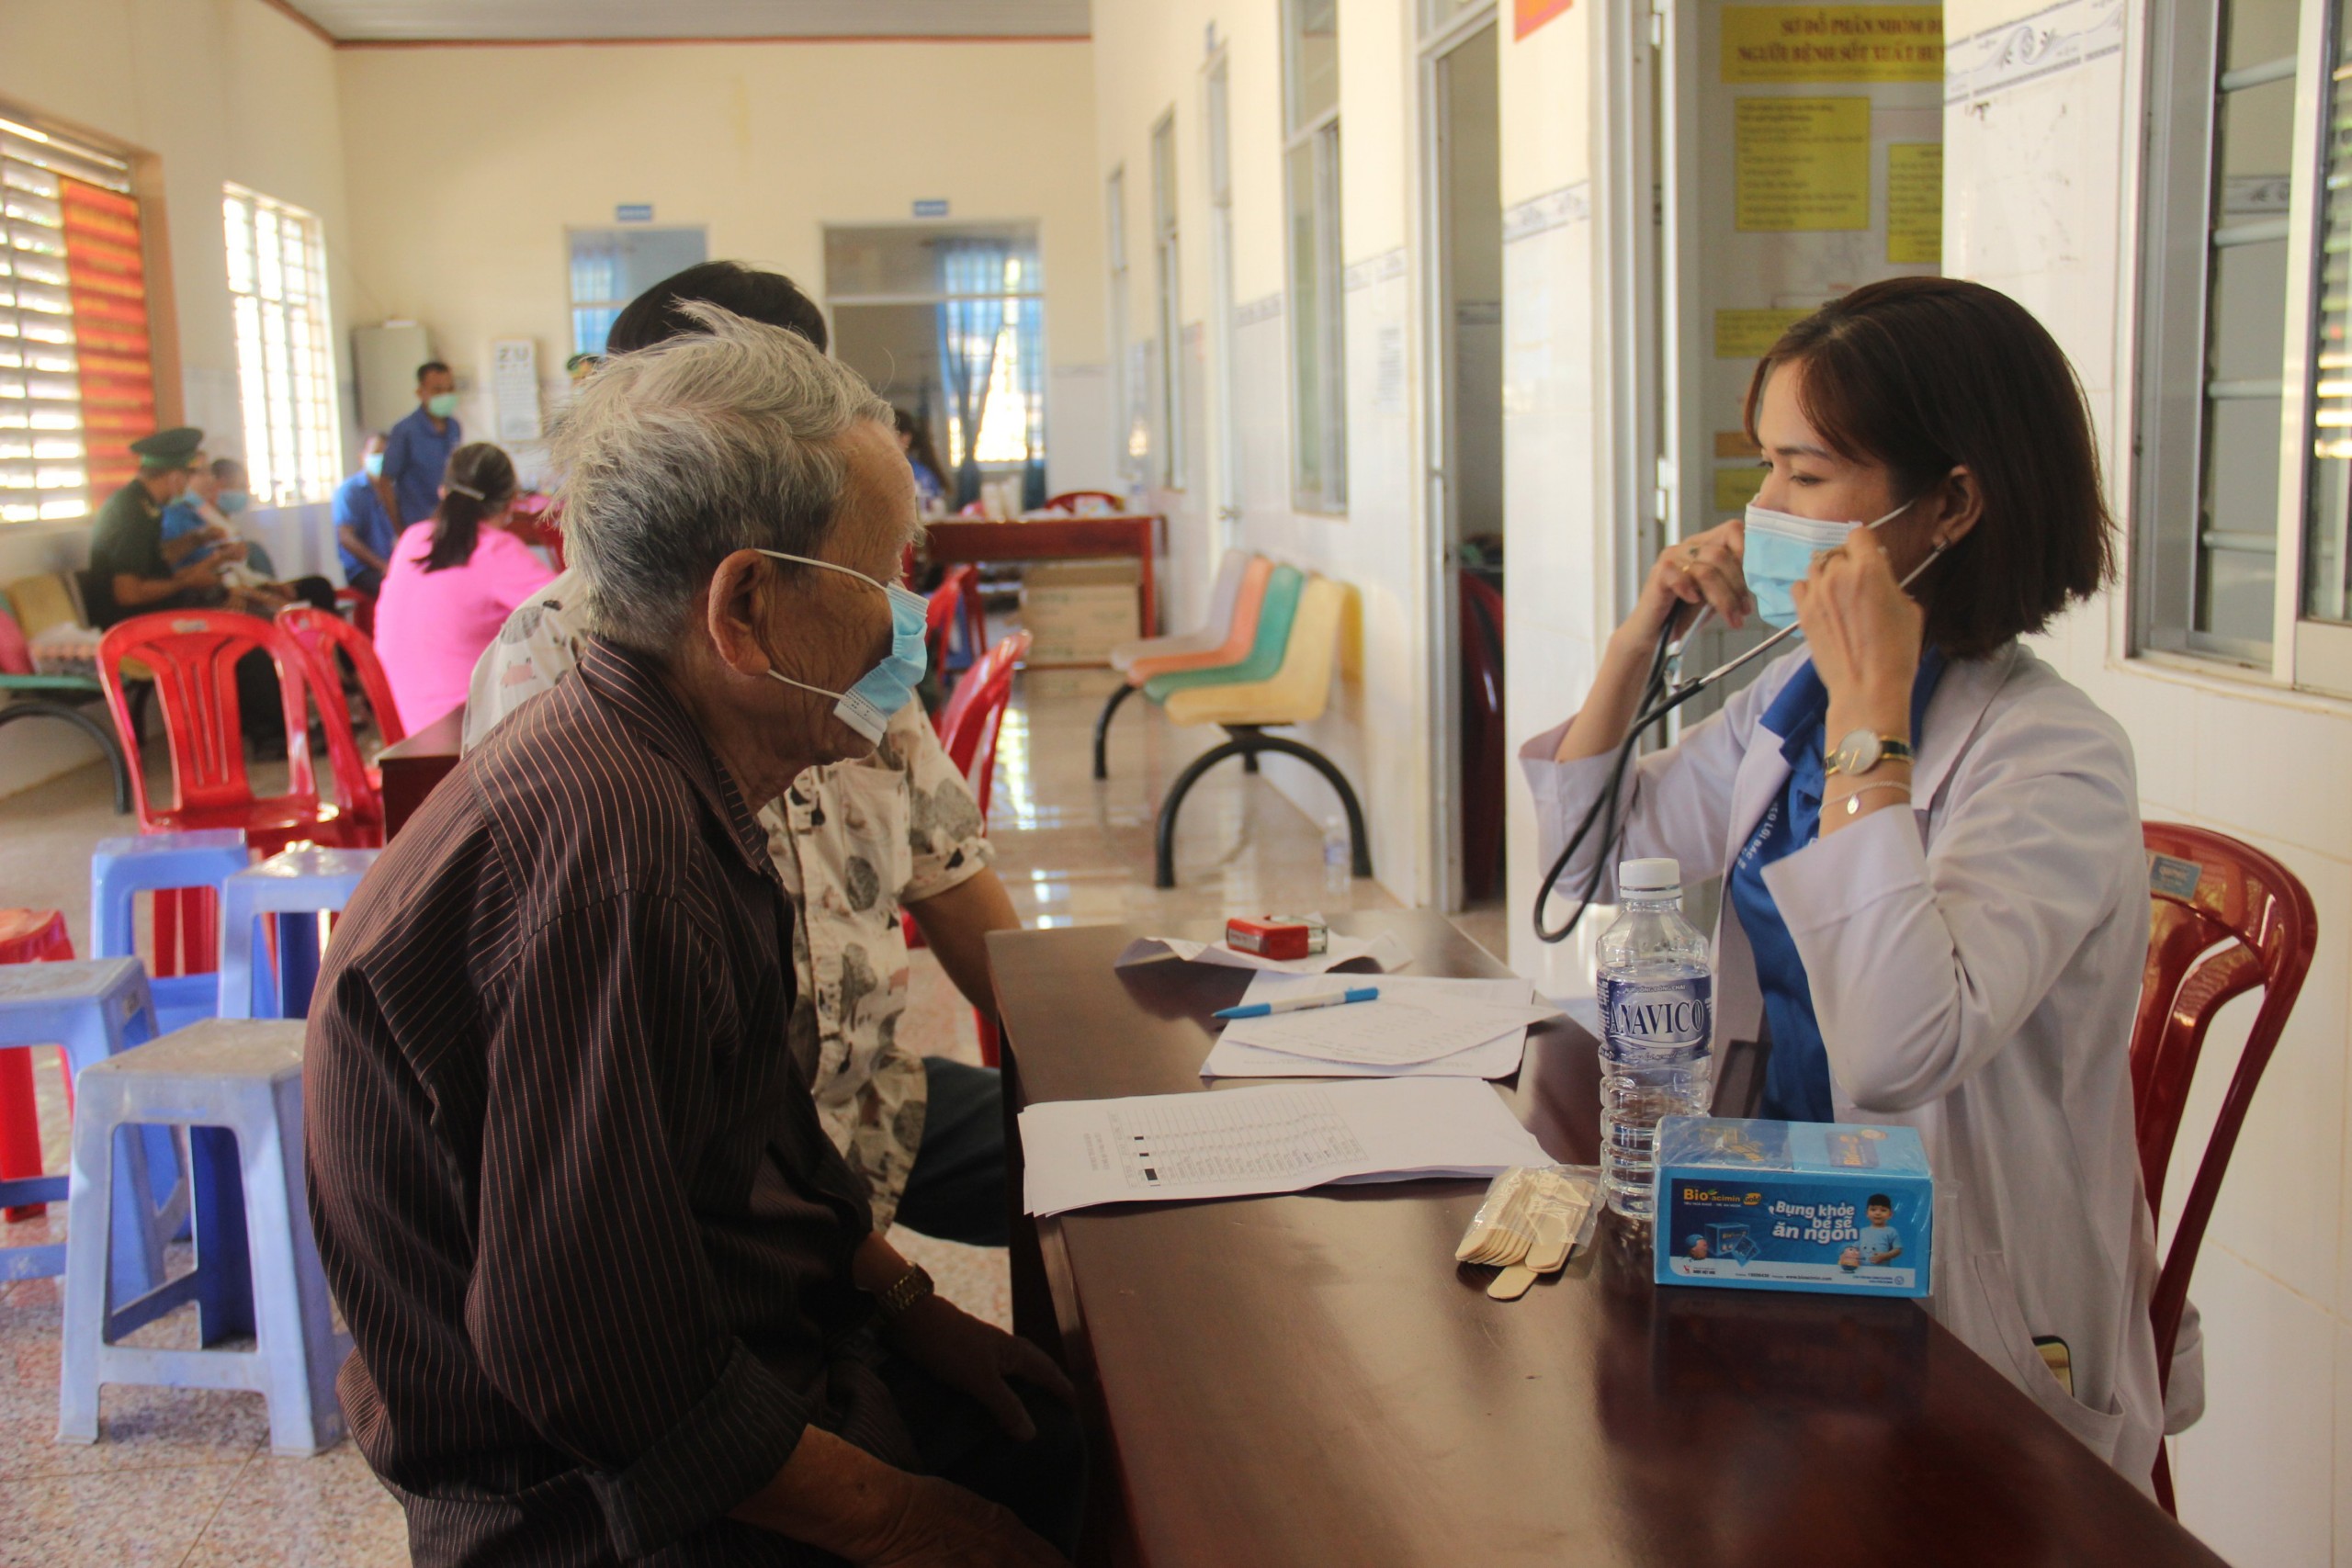 Khám bệnh và cấp thuốc miễn phí cho người dân có hoàn cảnh khó khăn tại huyện biên giới Lộc Ninh